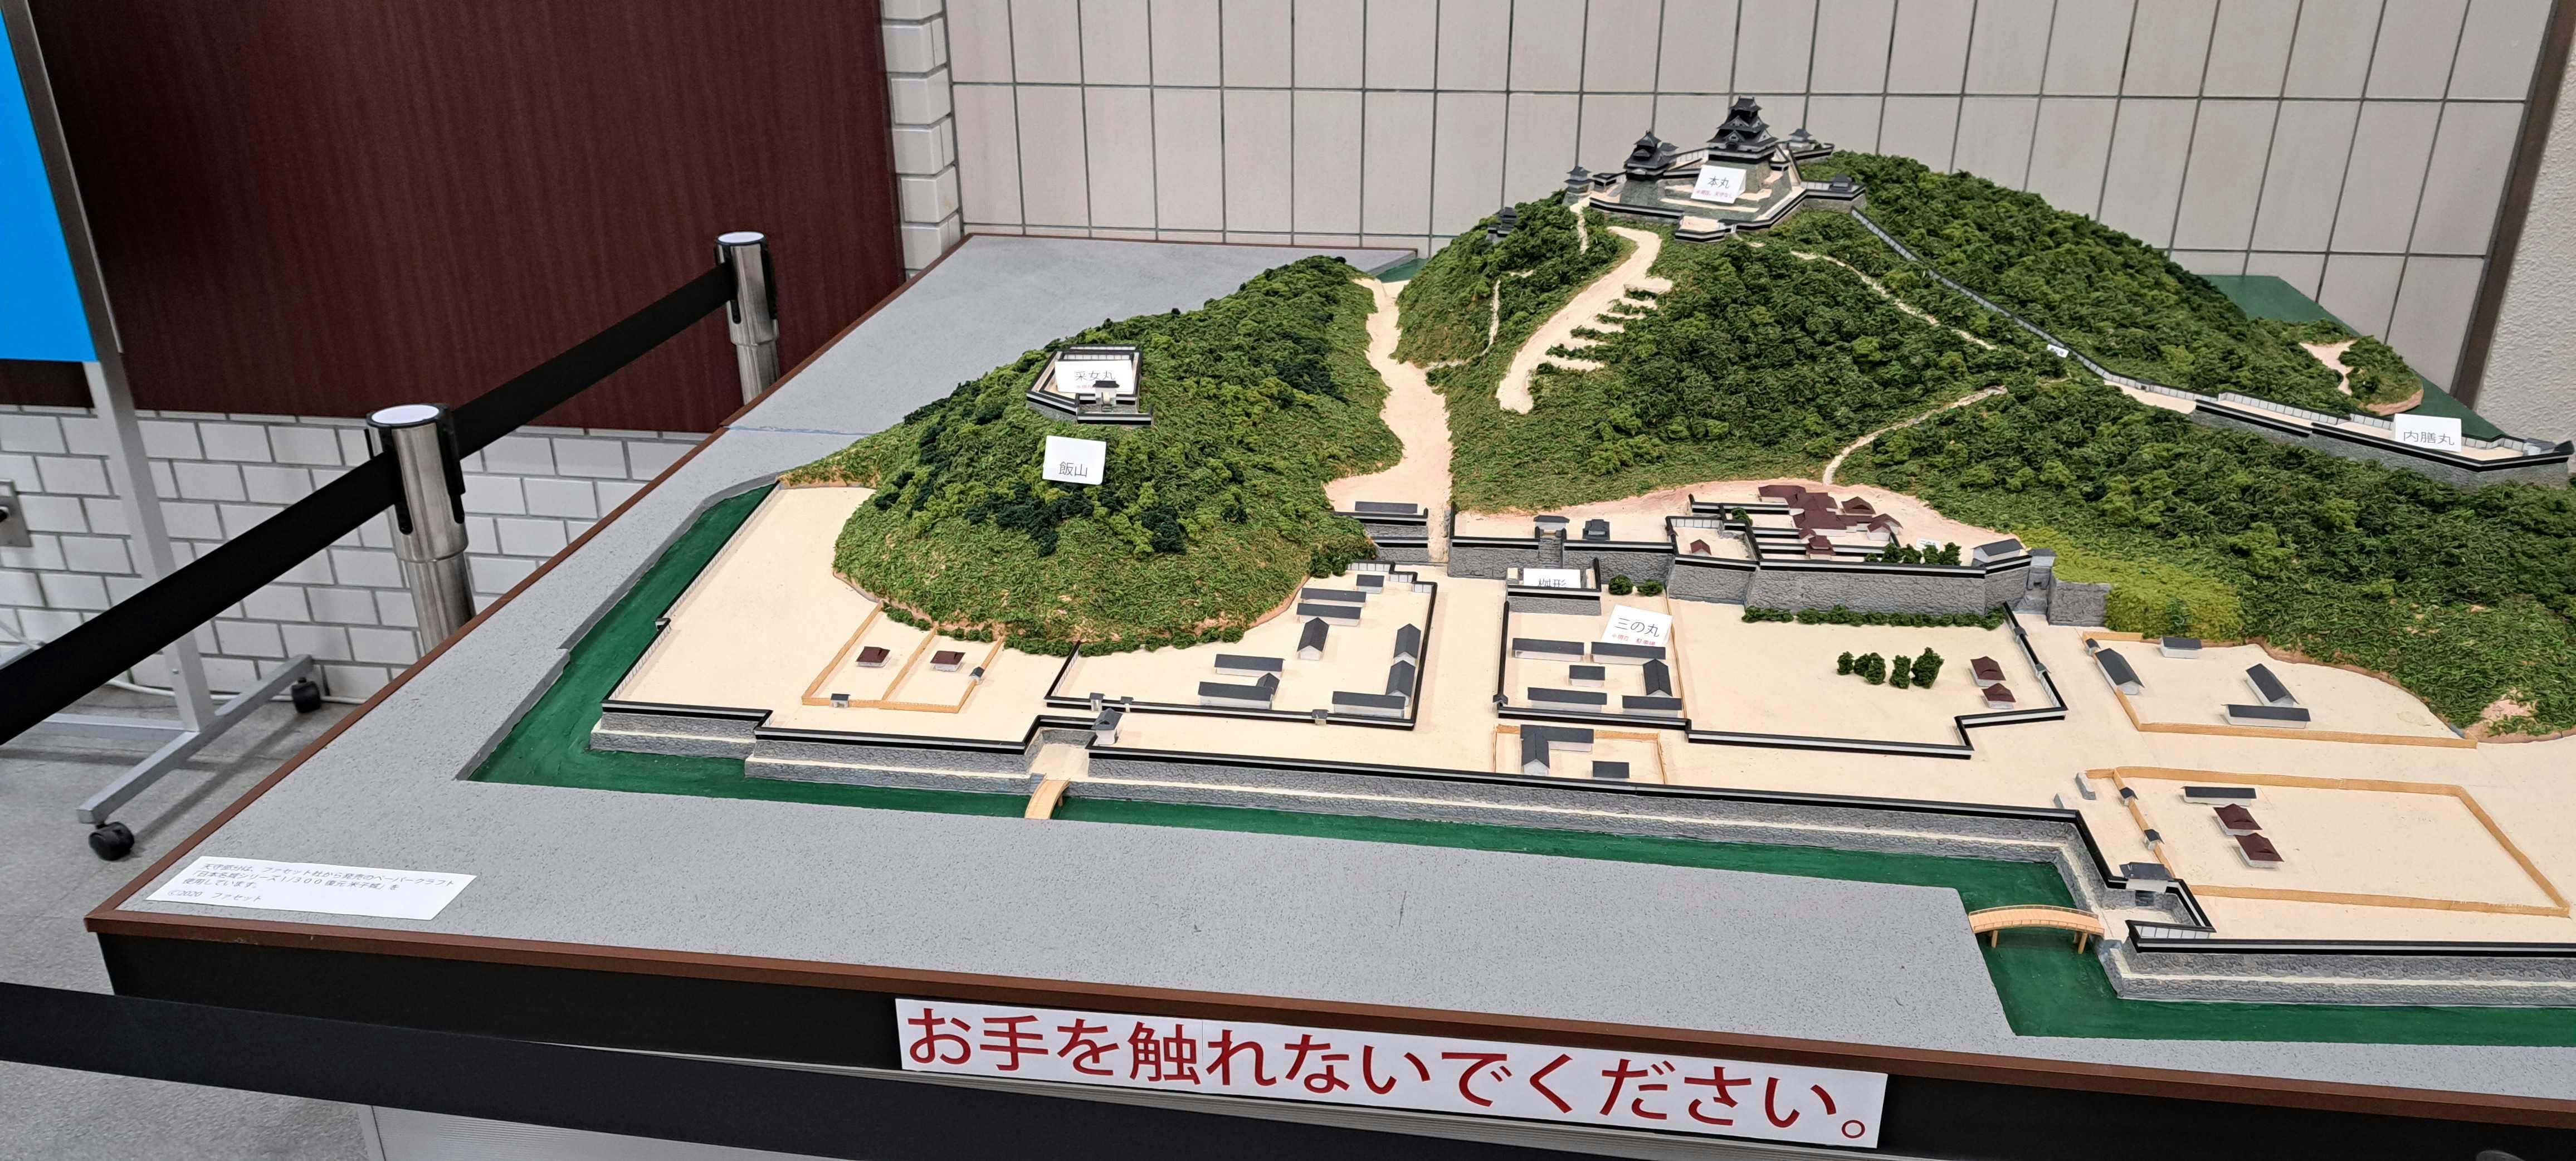 内堀まで再現した、1/300スケールの米子城ジオラマ模型を作りたい